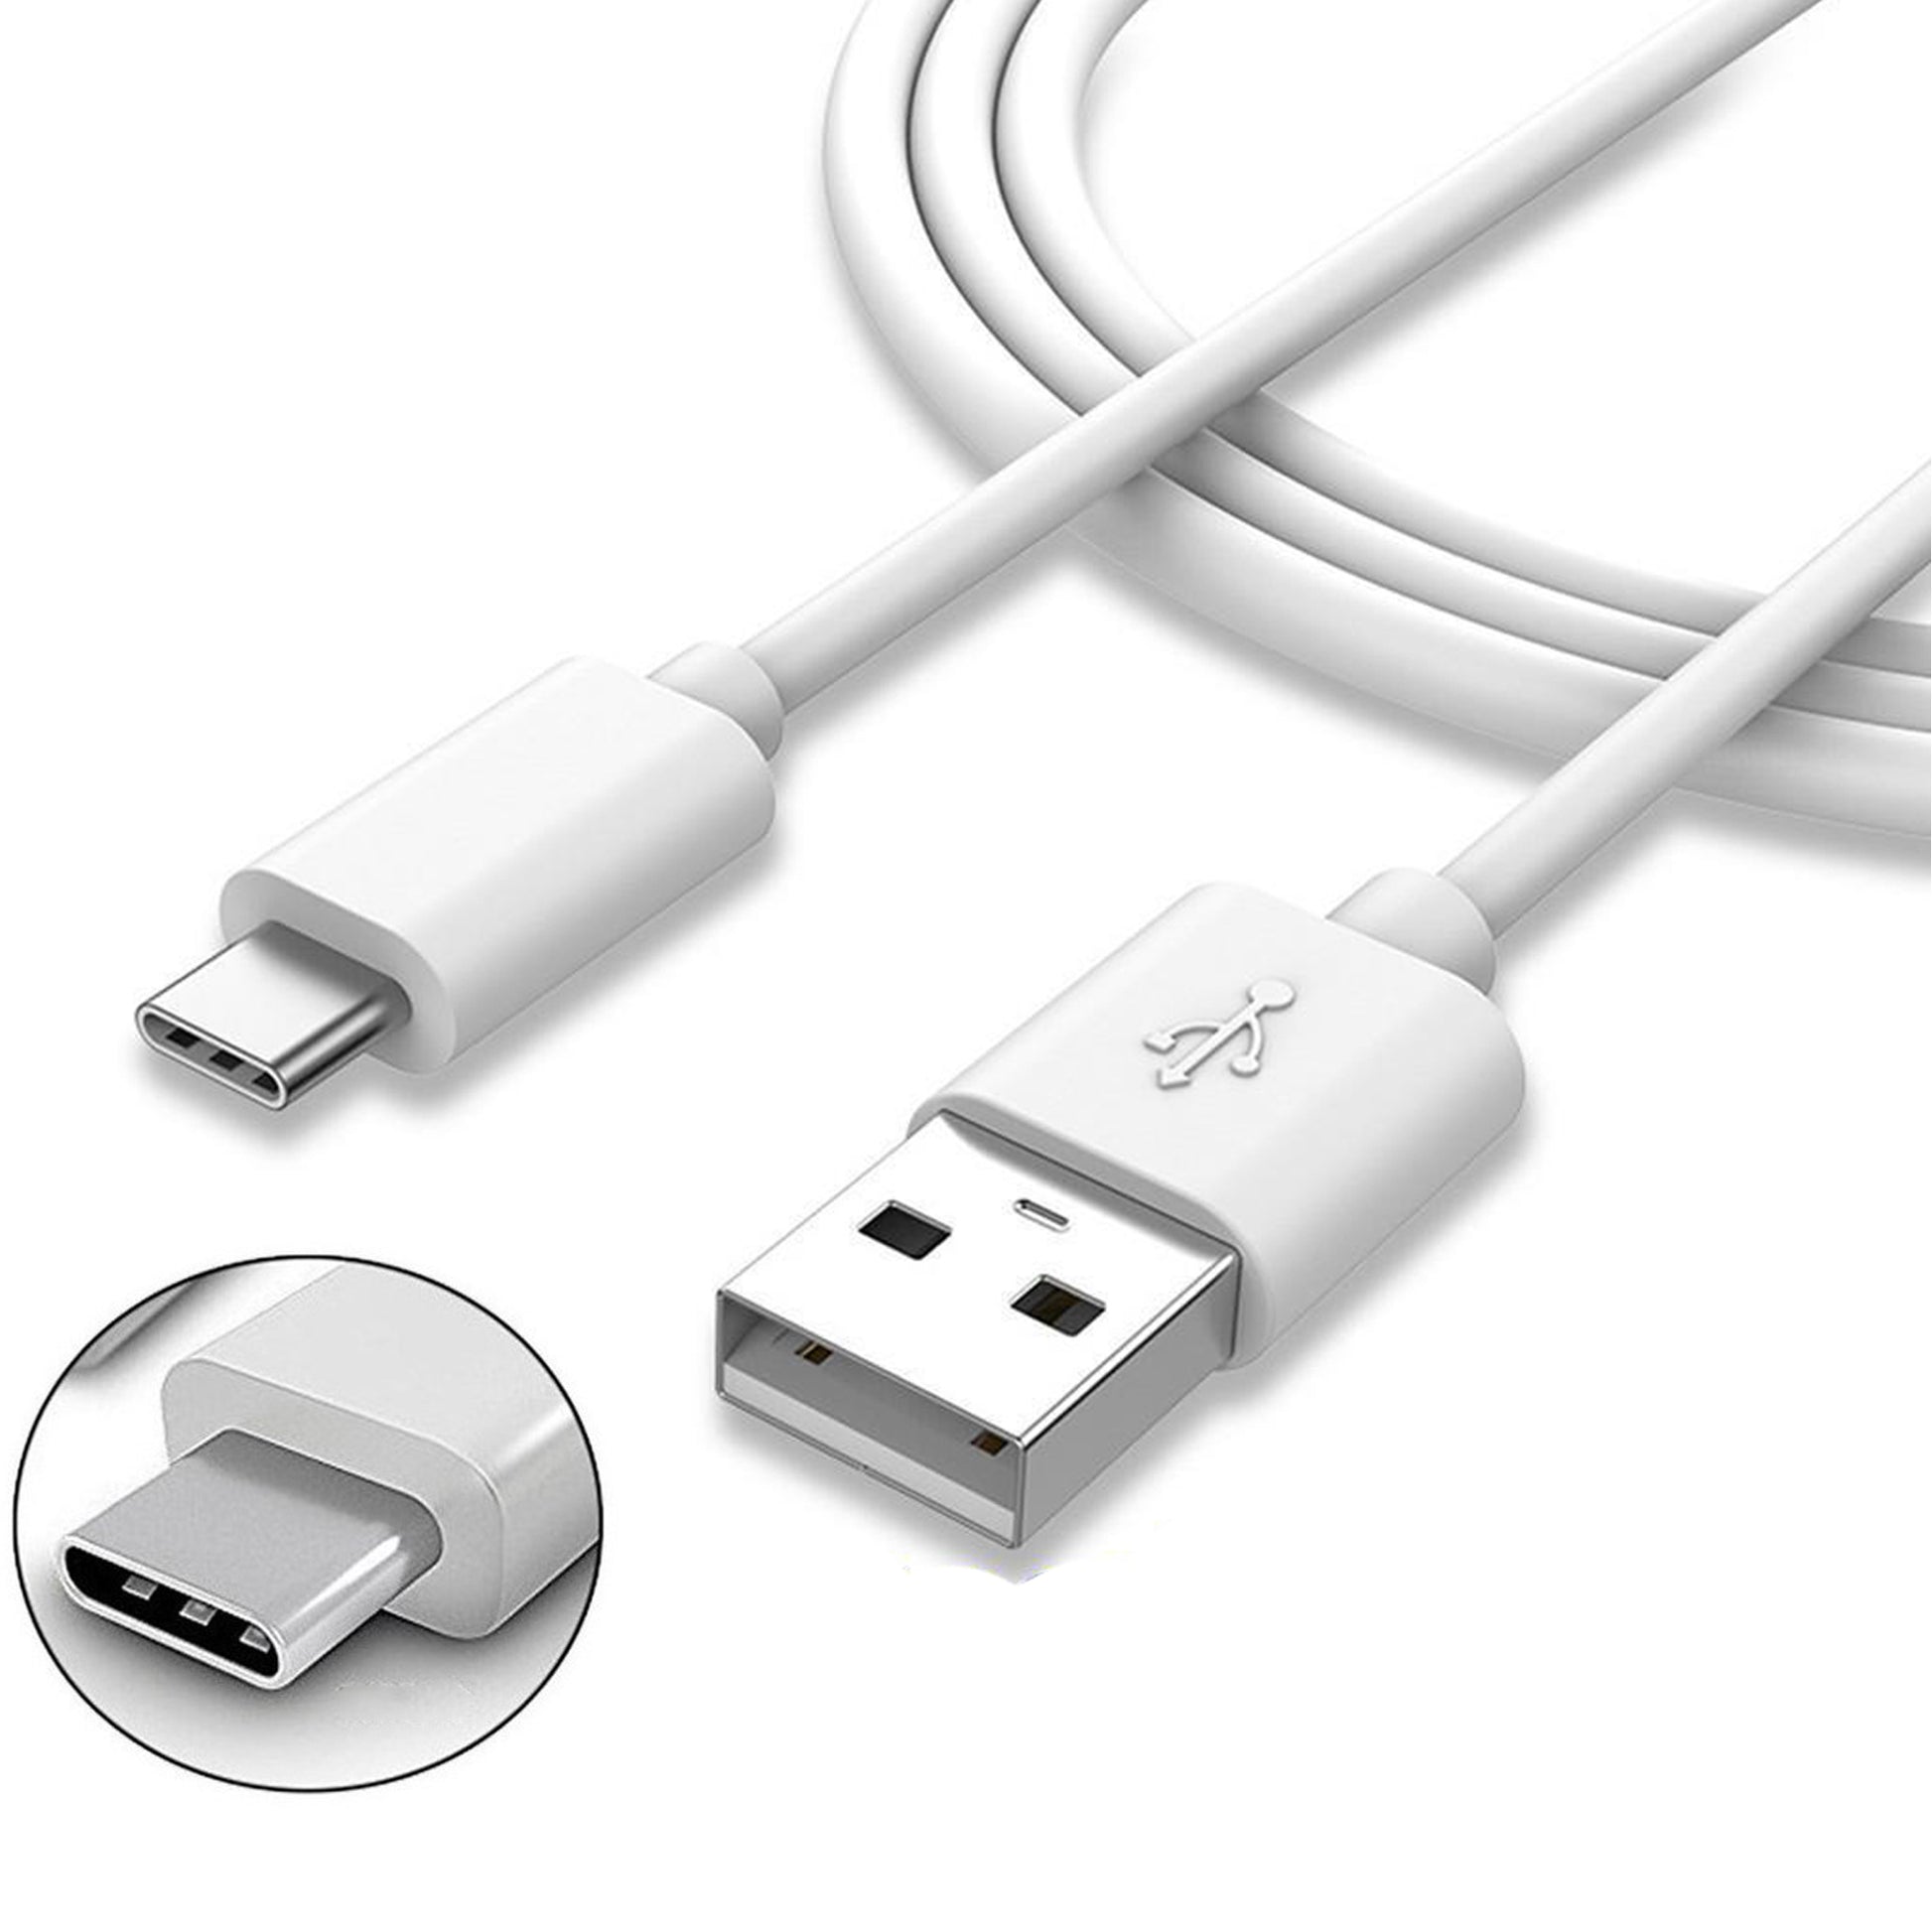 El cable USB 3 en 1 con el que cargar cualquier dispositivos en el